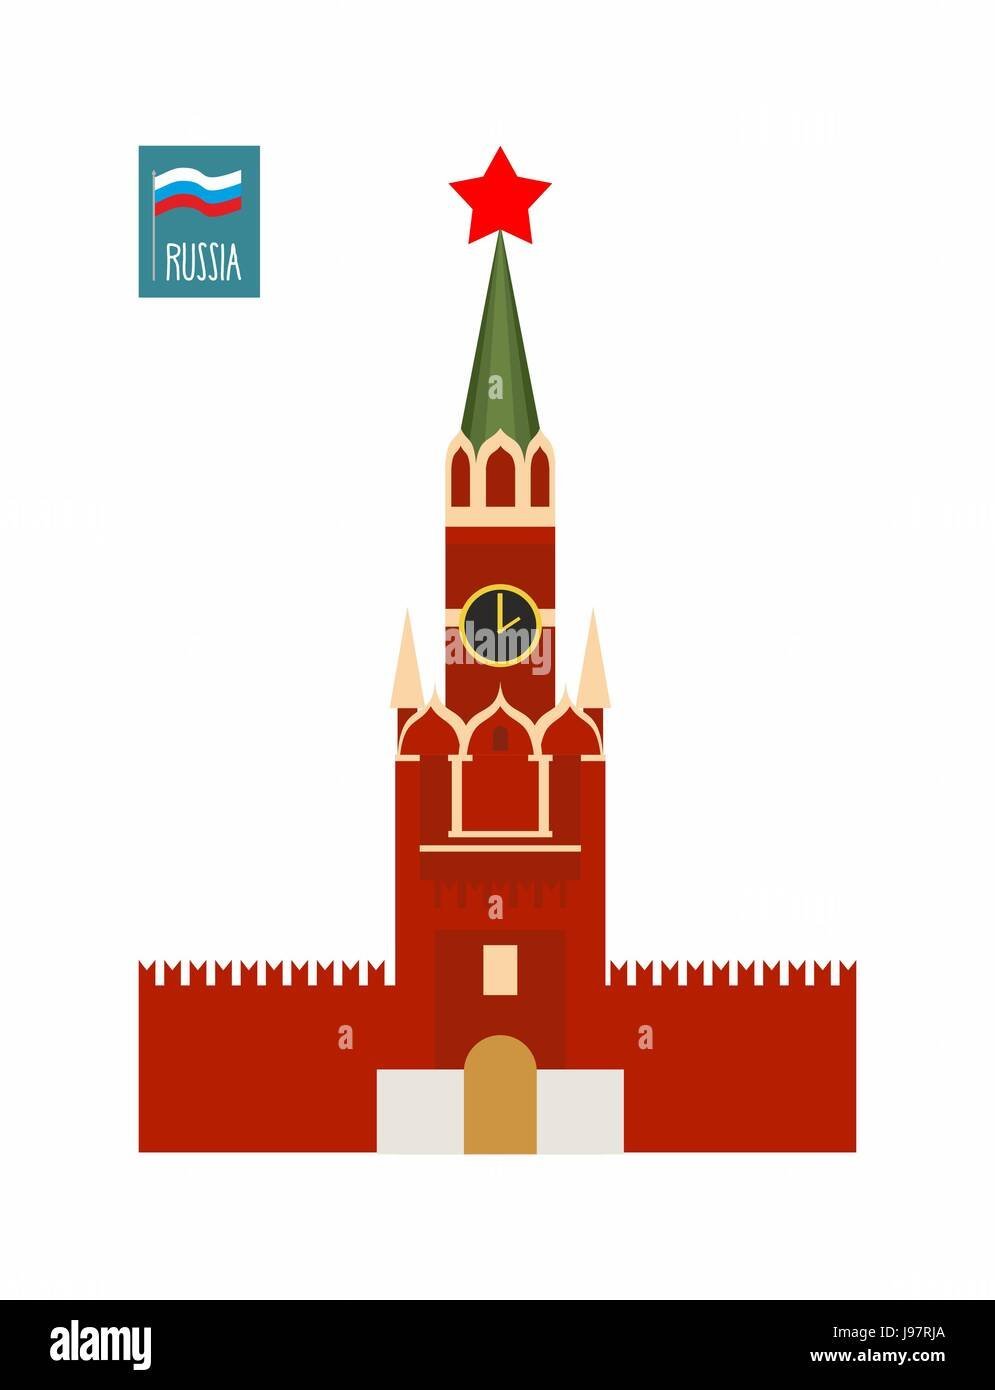 Спасская башня Кремля схематично